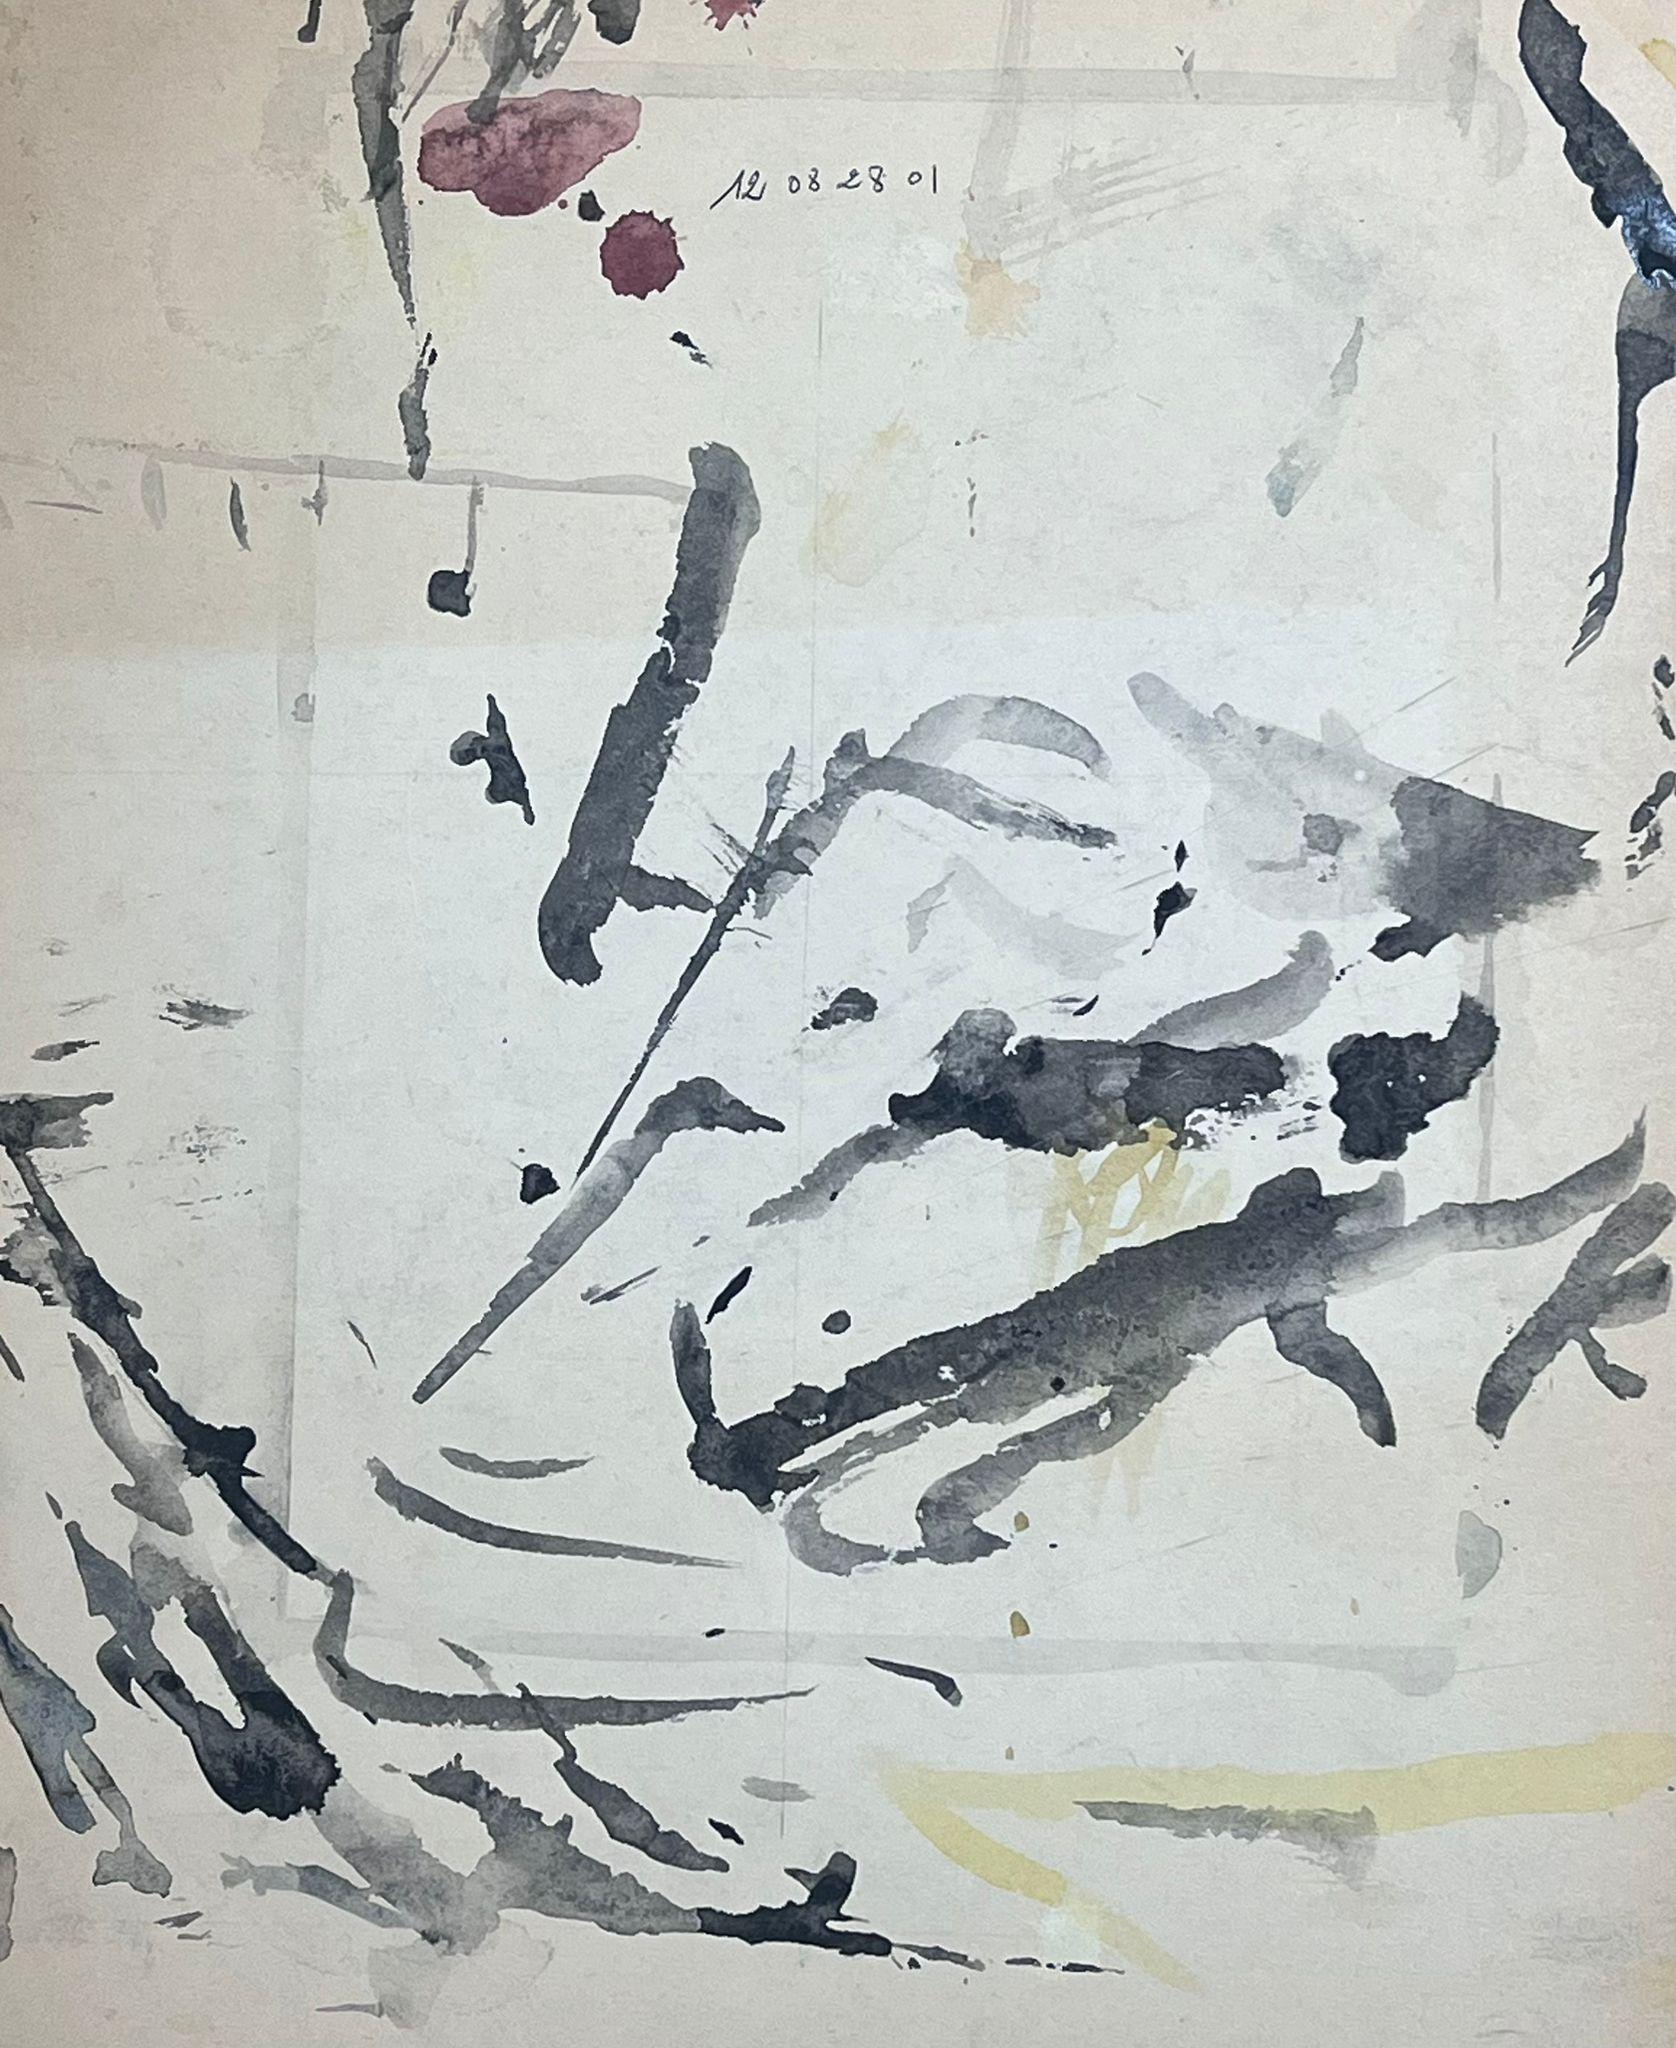 Composition expressionniste abstraite 
de Jacques COULAIS (1955-2011) aquarelle sur carton
sans cadre : 16.75 x 14 pouces
état : excellent
provenance : tous les tableaux de cet artiste que nous avons en vente proviennent du Studio de l'artiste et